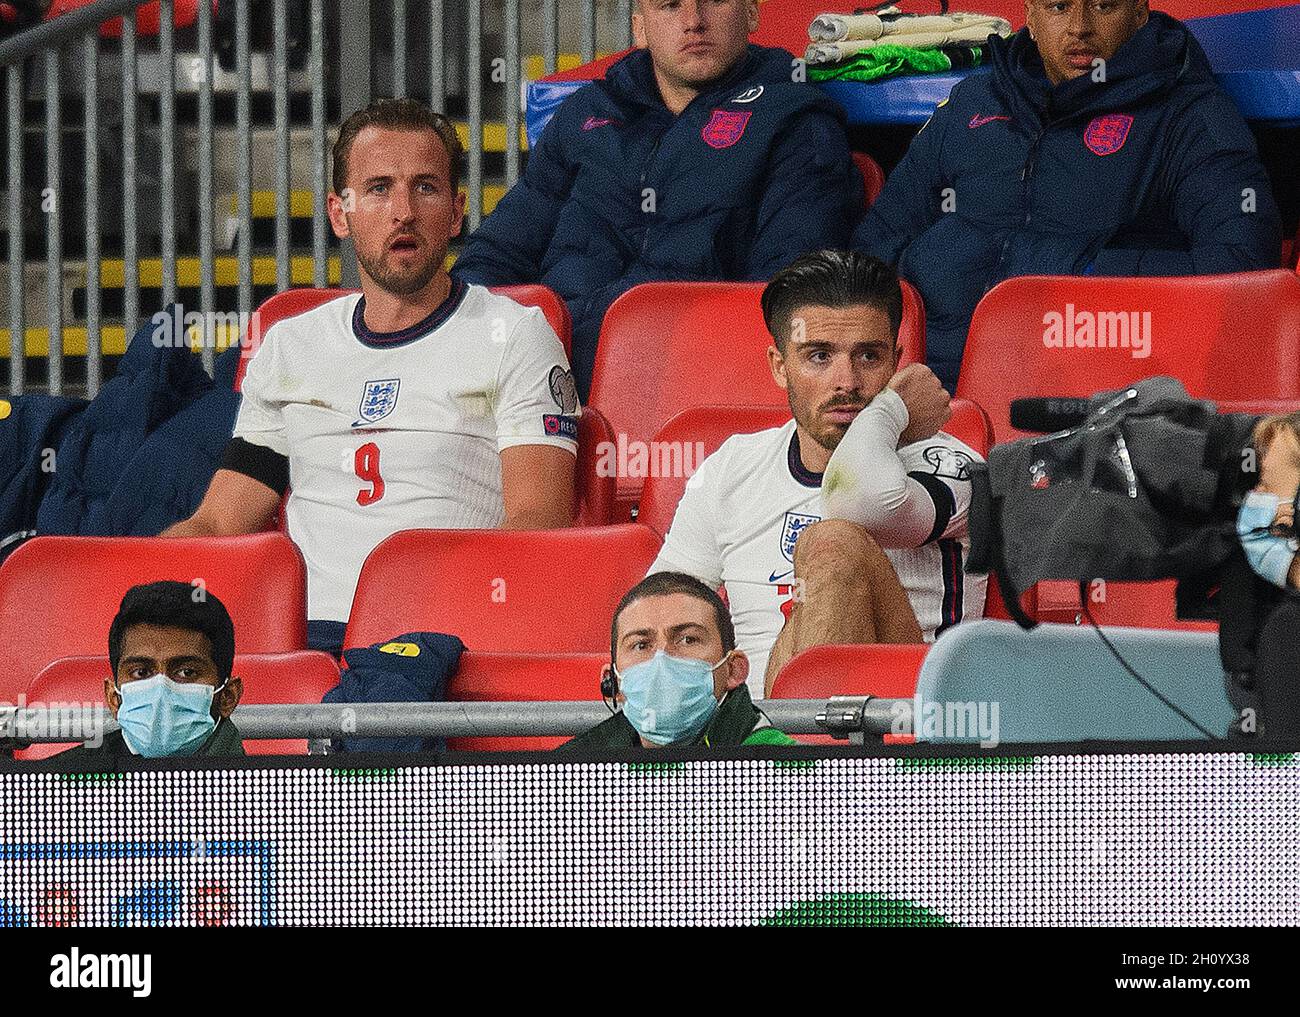 Angleterre contre Hongrie - coupe du monde de la FIFA 2022 Harry Kane et Jack Grealish sont assis dans les tribunes ayant tous deux été substitués.Image : Mark pain / Alamy Banque D'Images